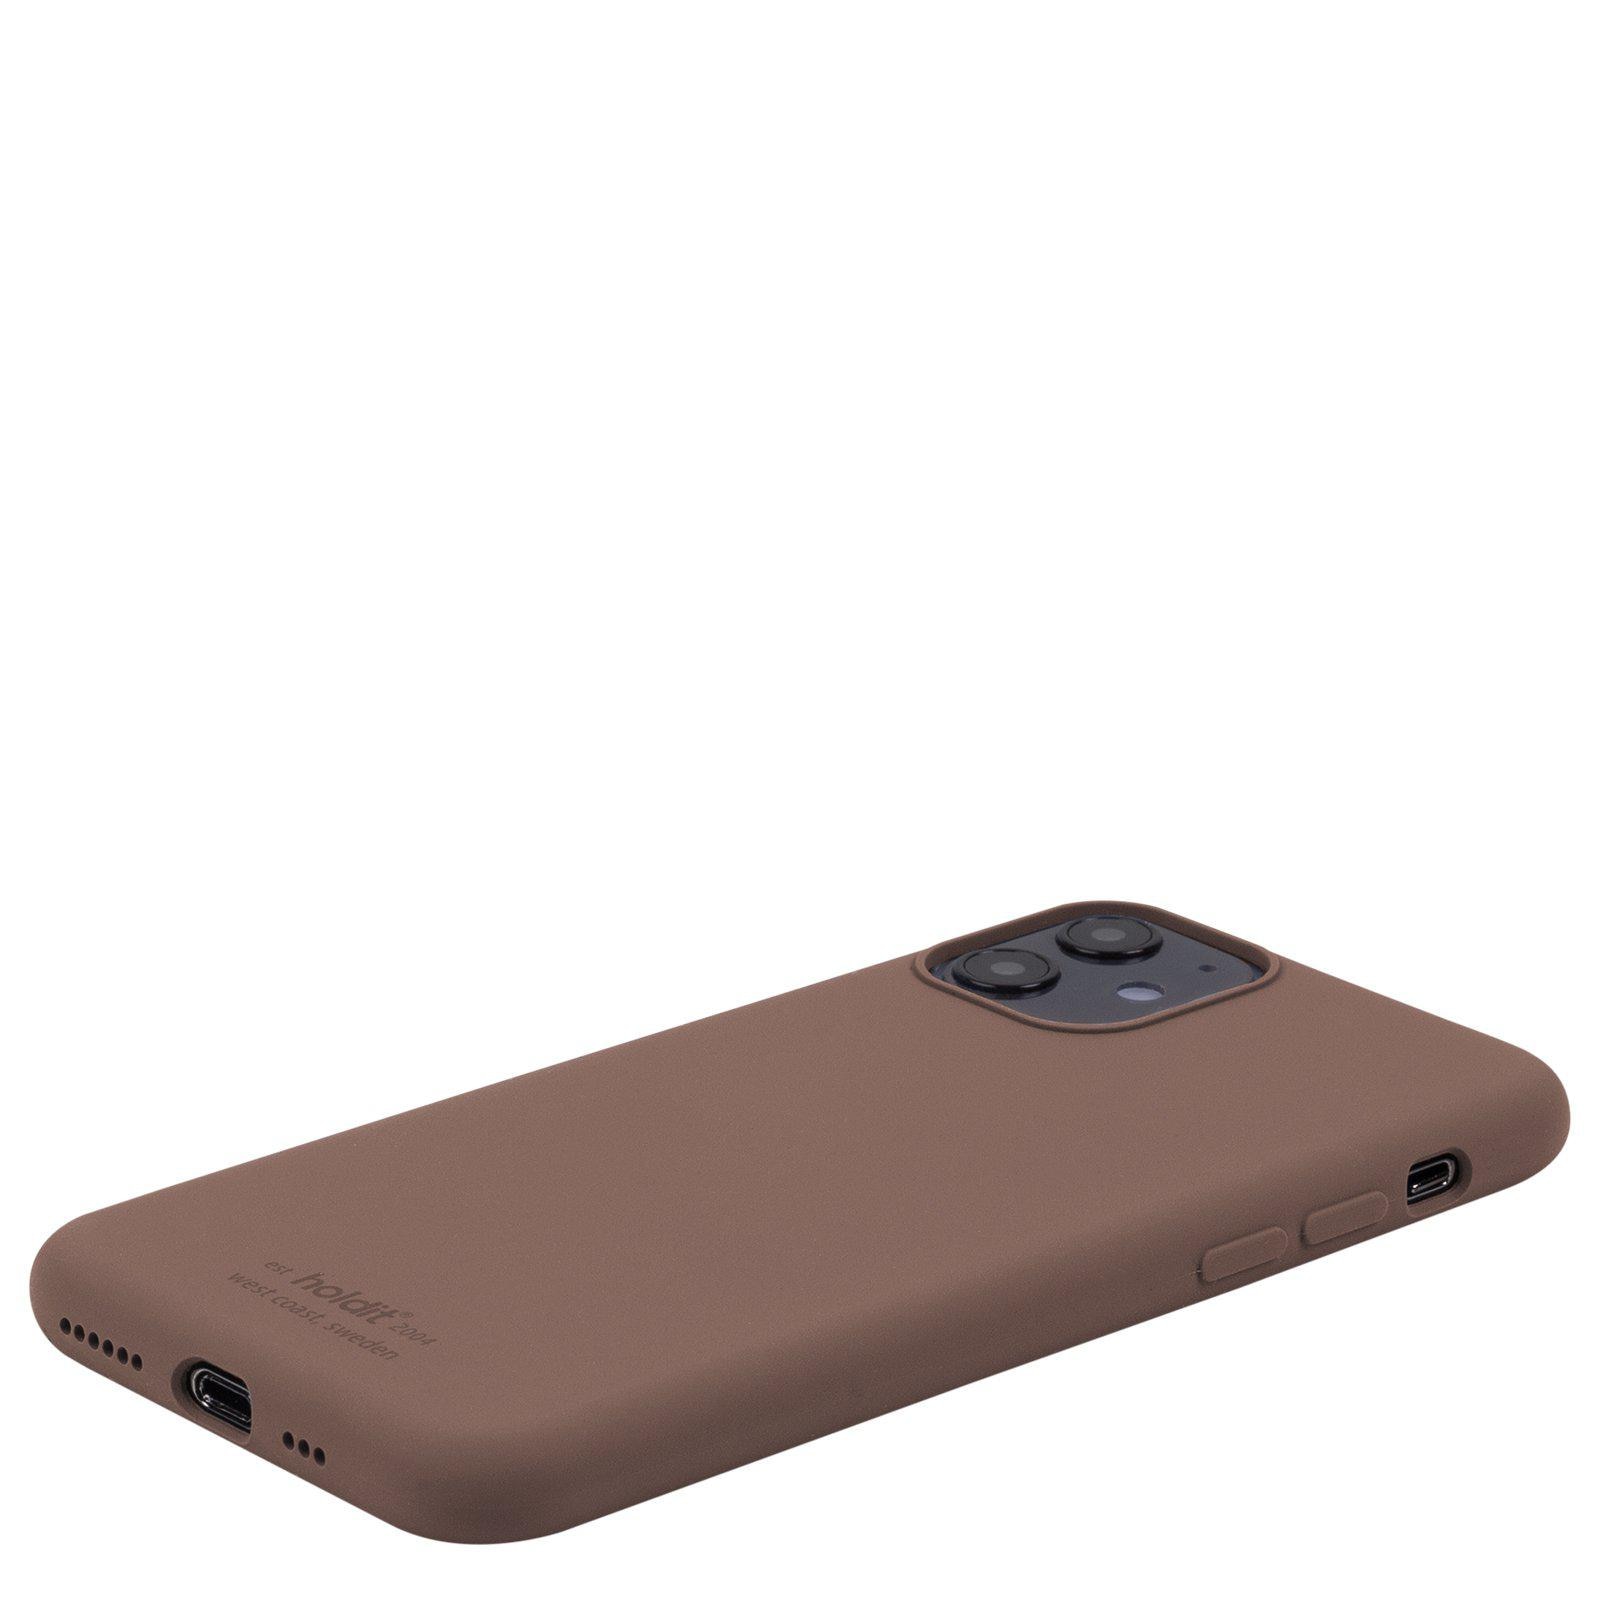 iPhone XR Silicone Case, Dark Brown